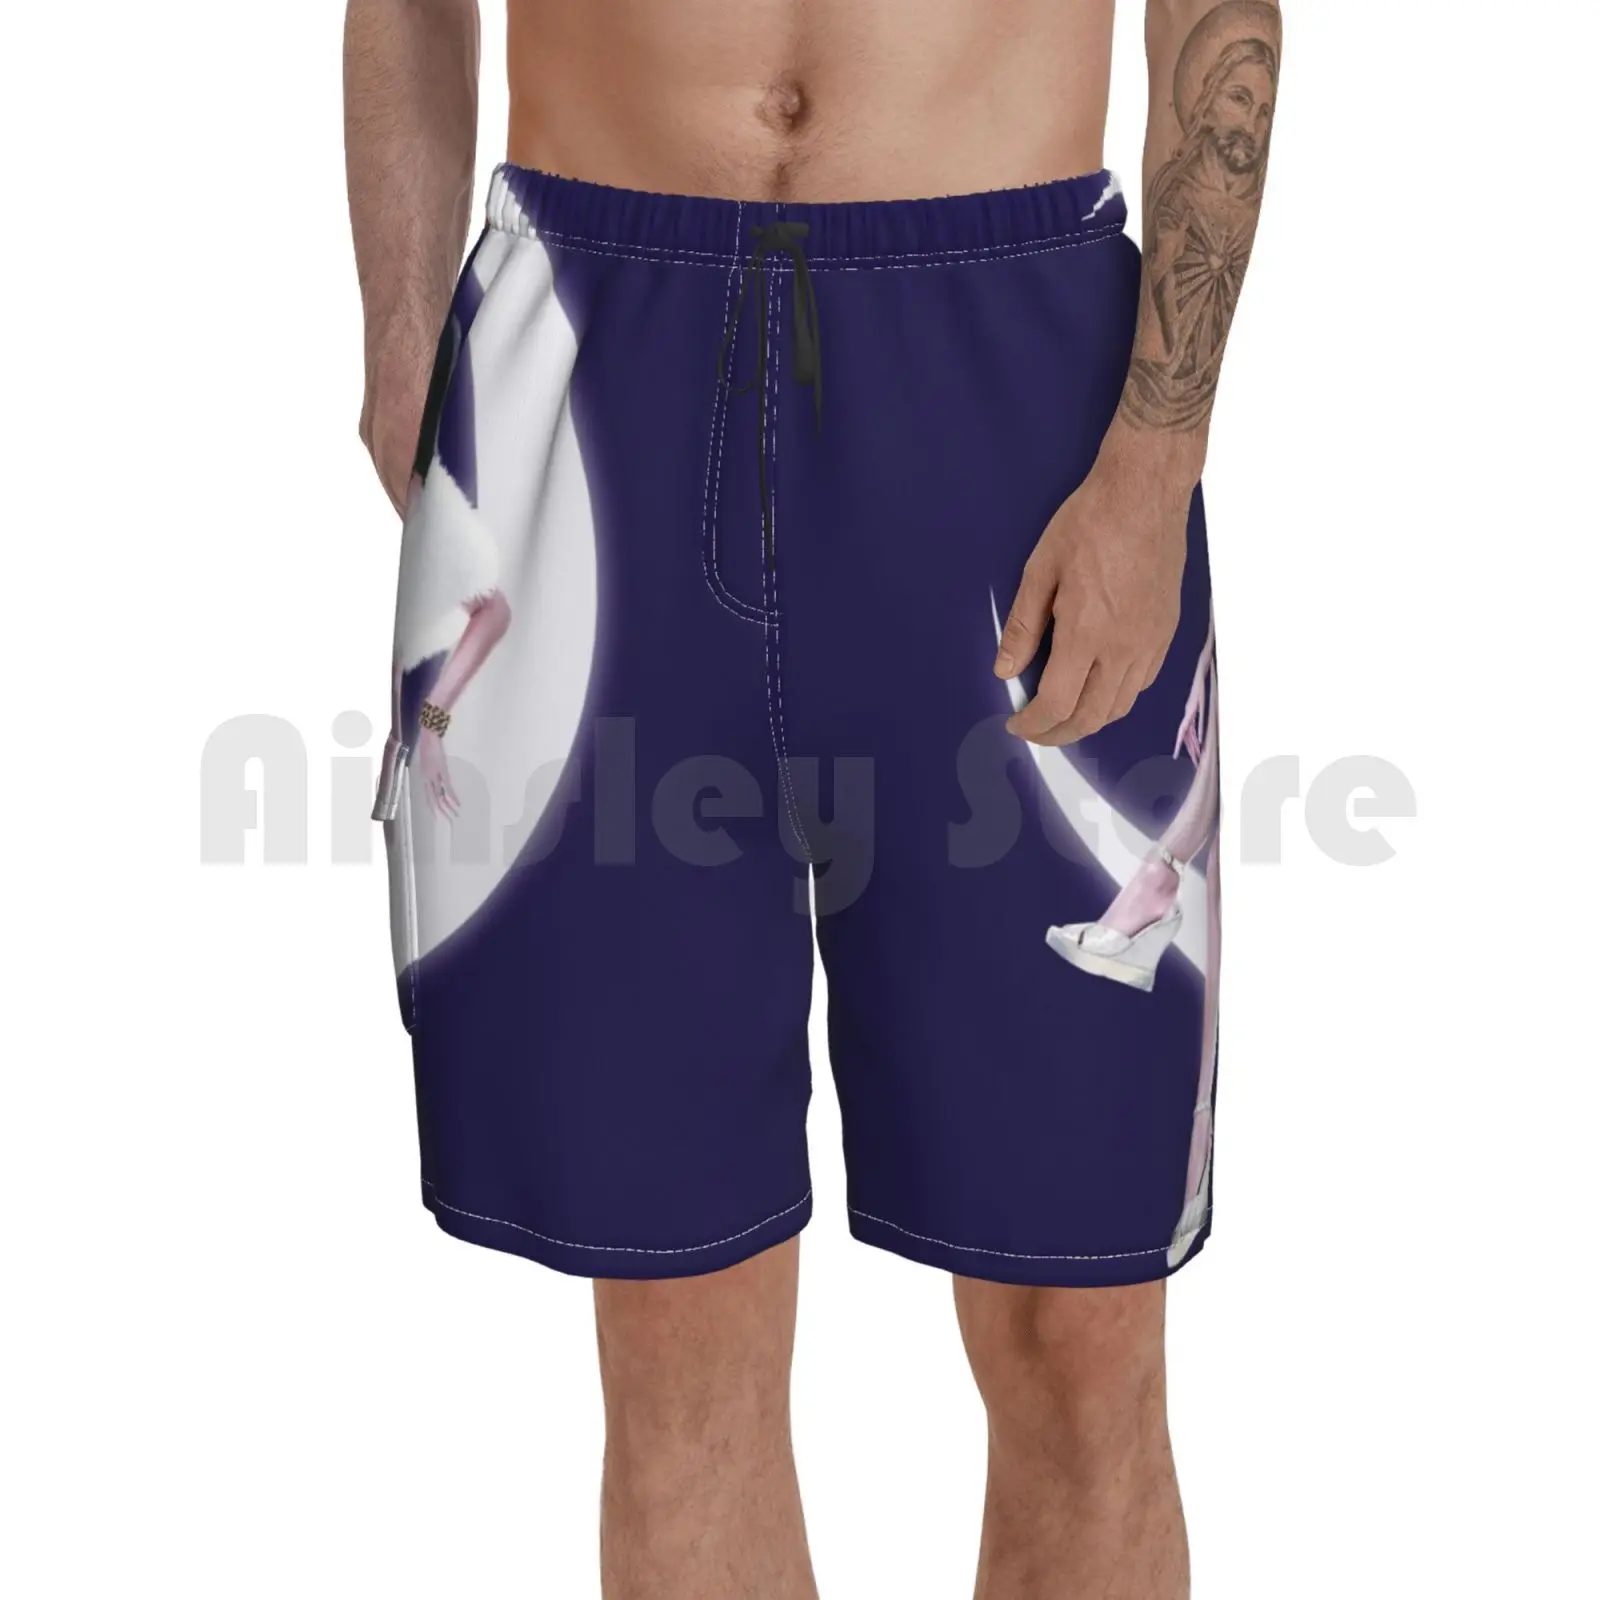 

Пляжные шорты мужские пляжные шорты для купания в прямом эфире поп-звезды поп-музыки улыбка 2020 на сцене подростковые мечты Калифорнии Gurls по...